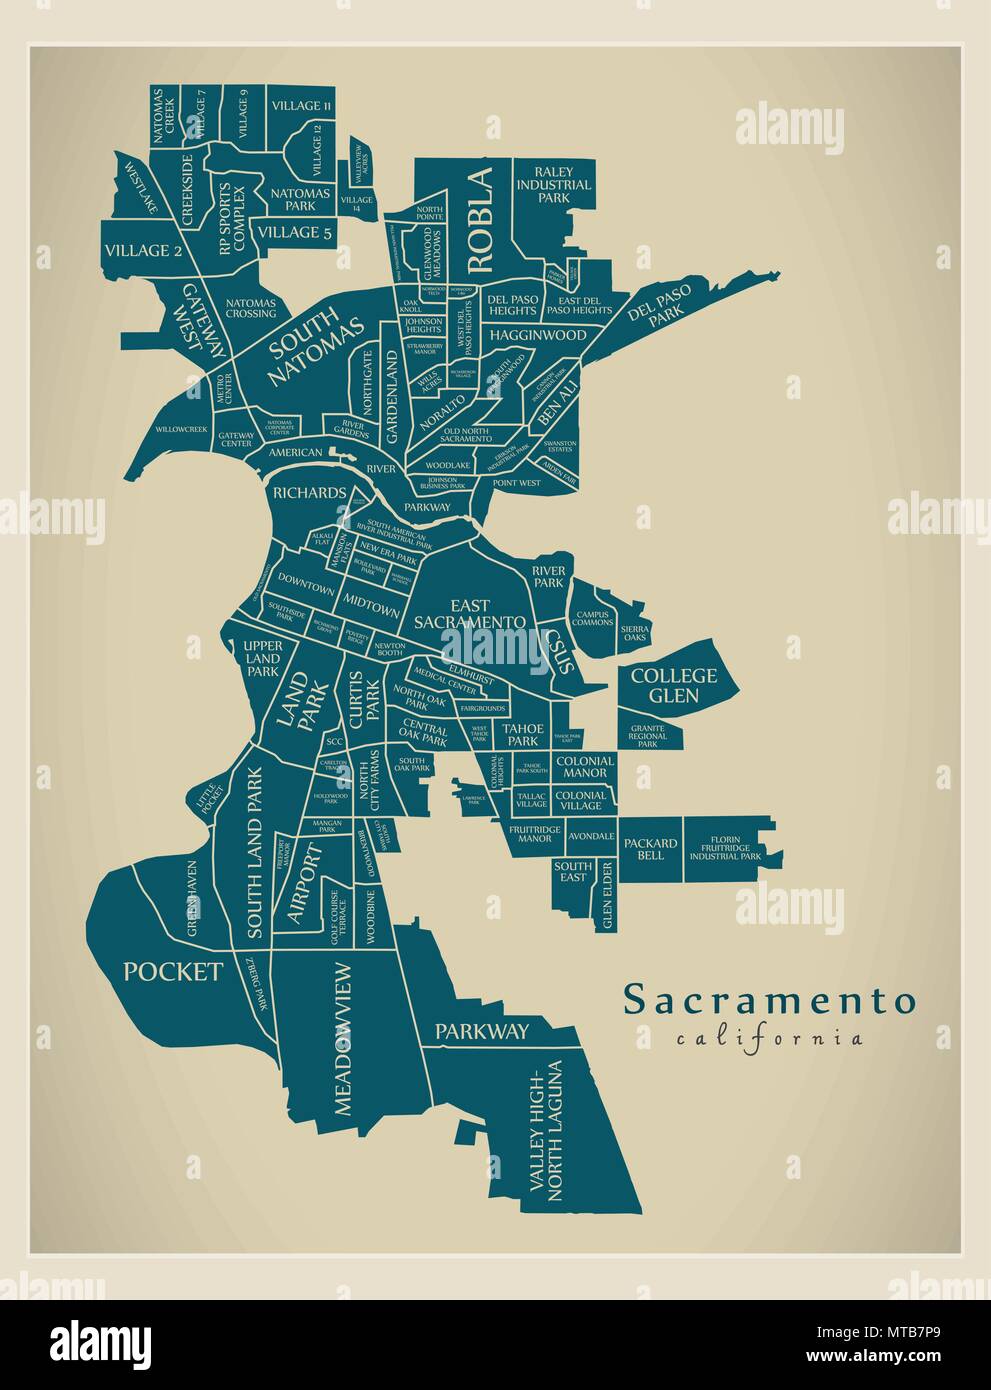 Plan de la ville moderne - Sacramento Californie ville des États-Unis avec des titres et des quartiers Illustration de Vecteur